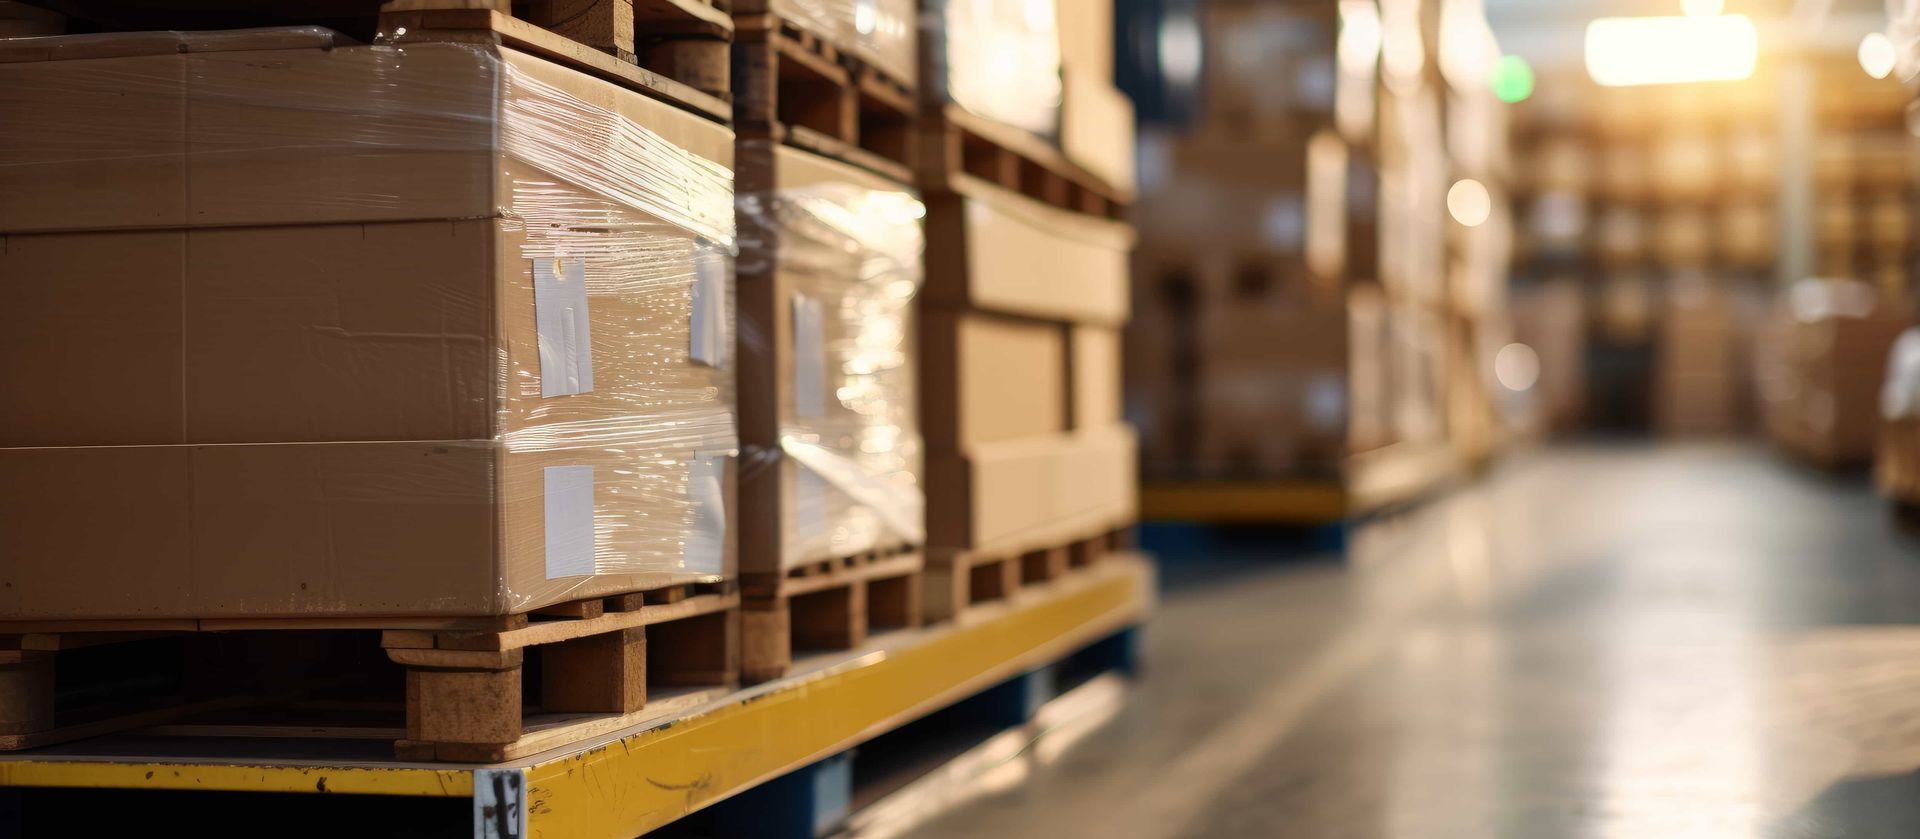 Sammelgutverkehr: Effiziente Logistiklösungen für Ihren Warentransport